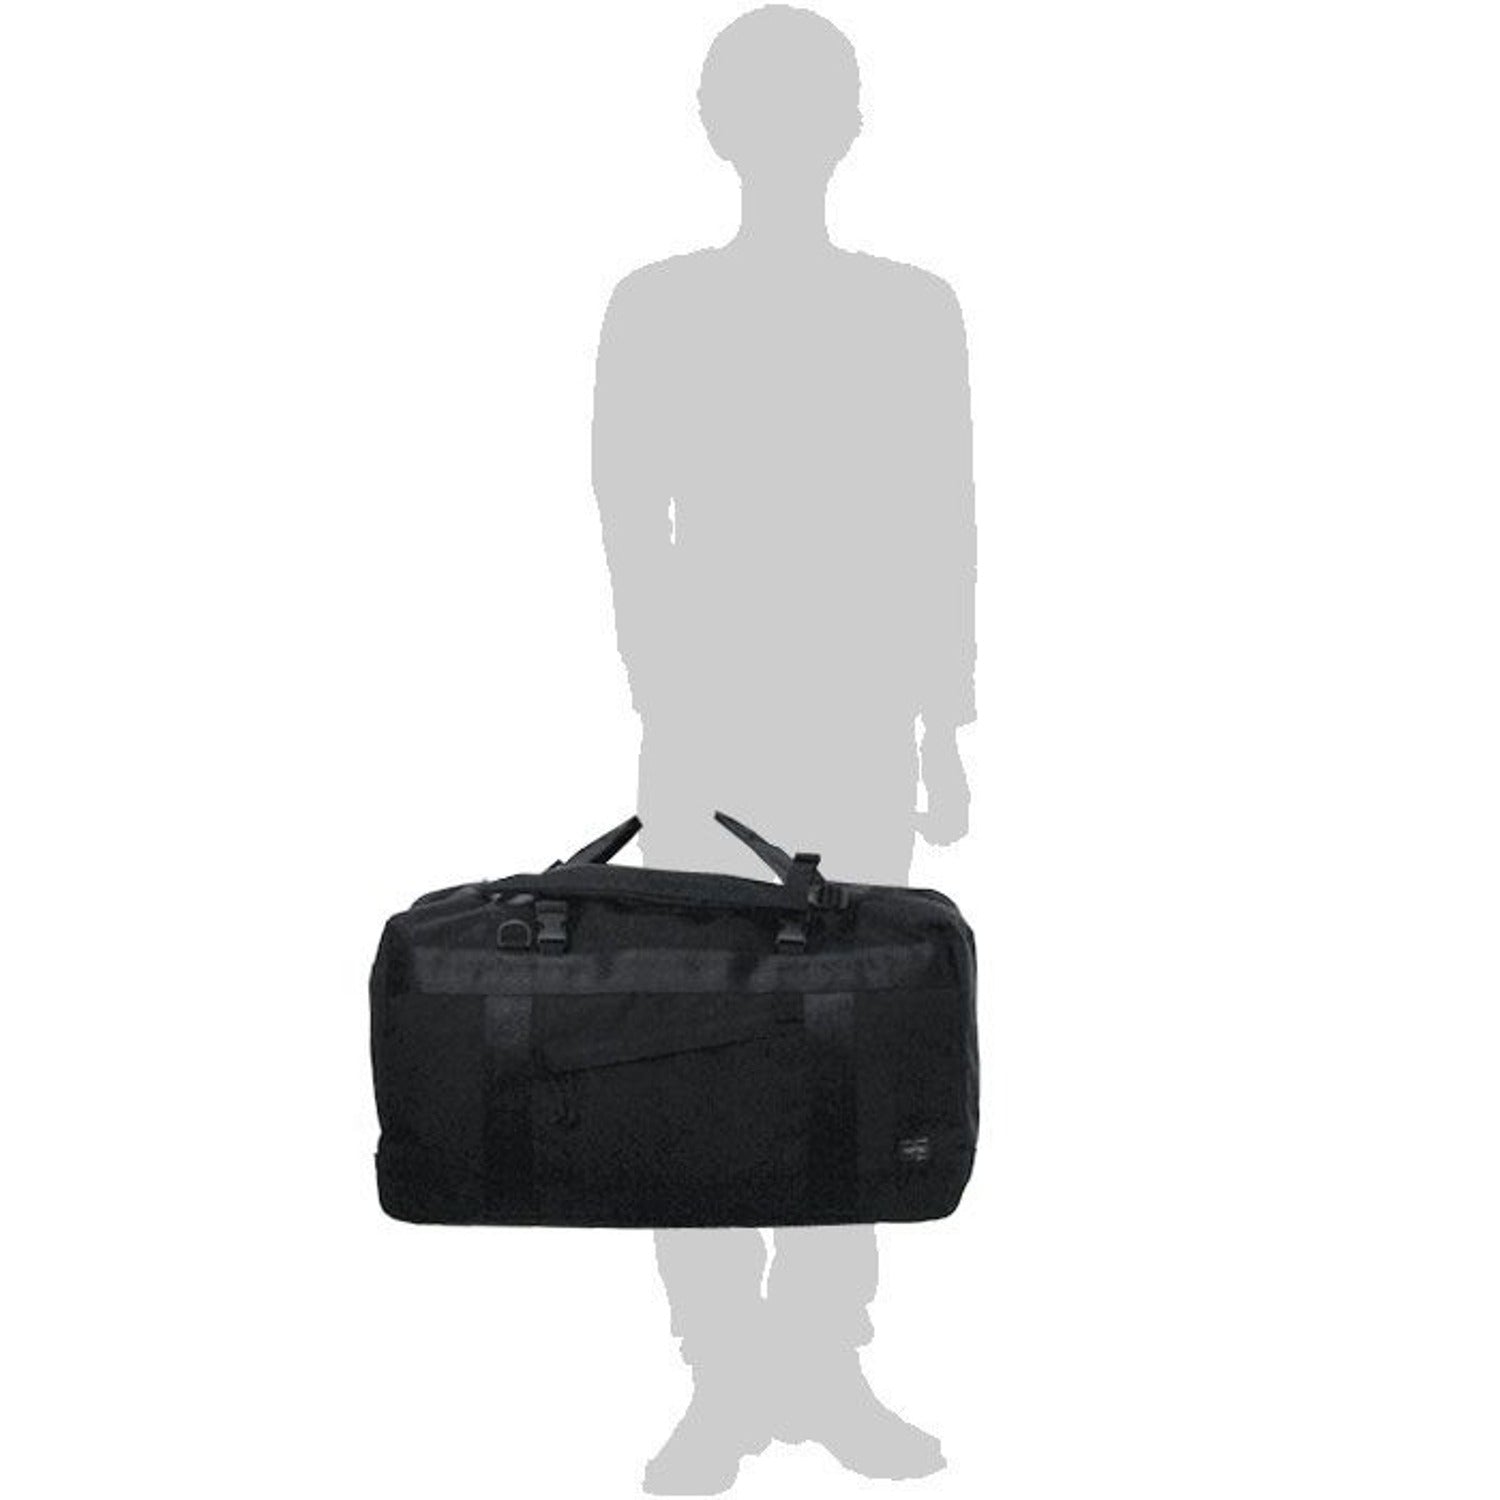 55.00 USD Louis vuitton men's new leather computer bag briefcase large lv